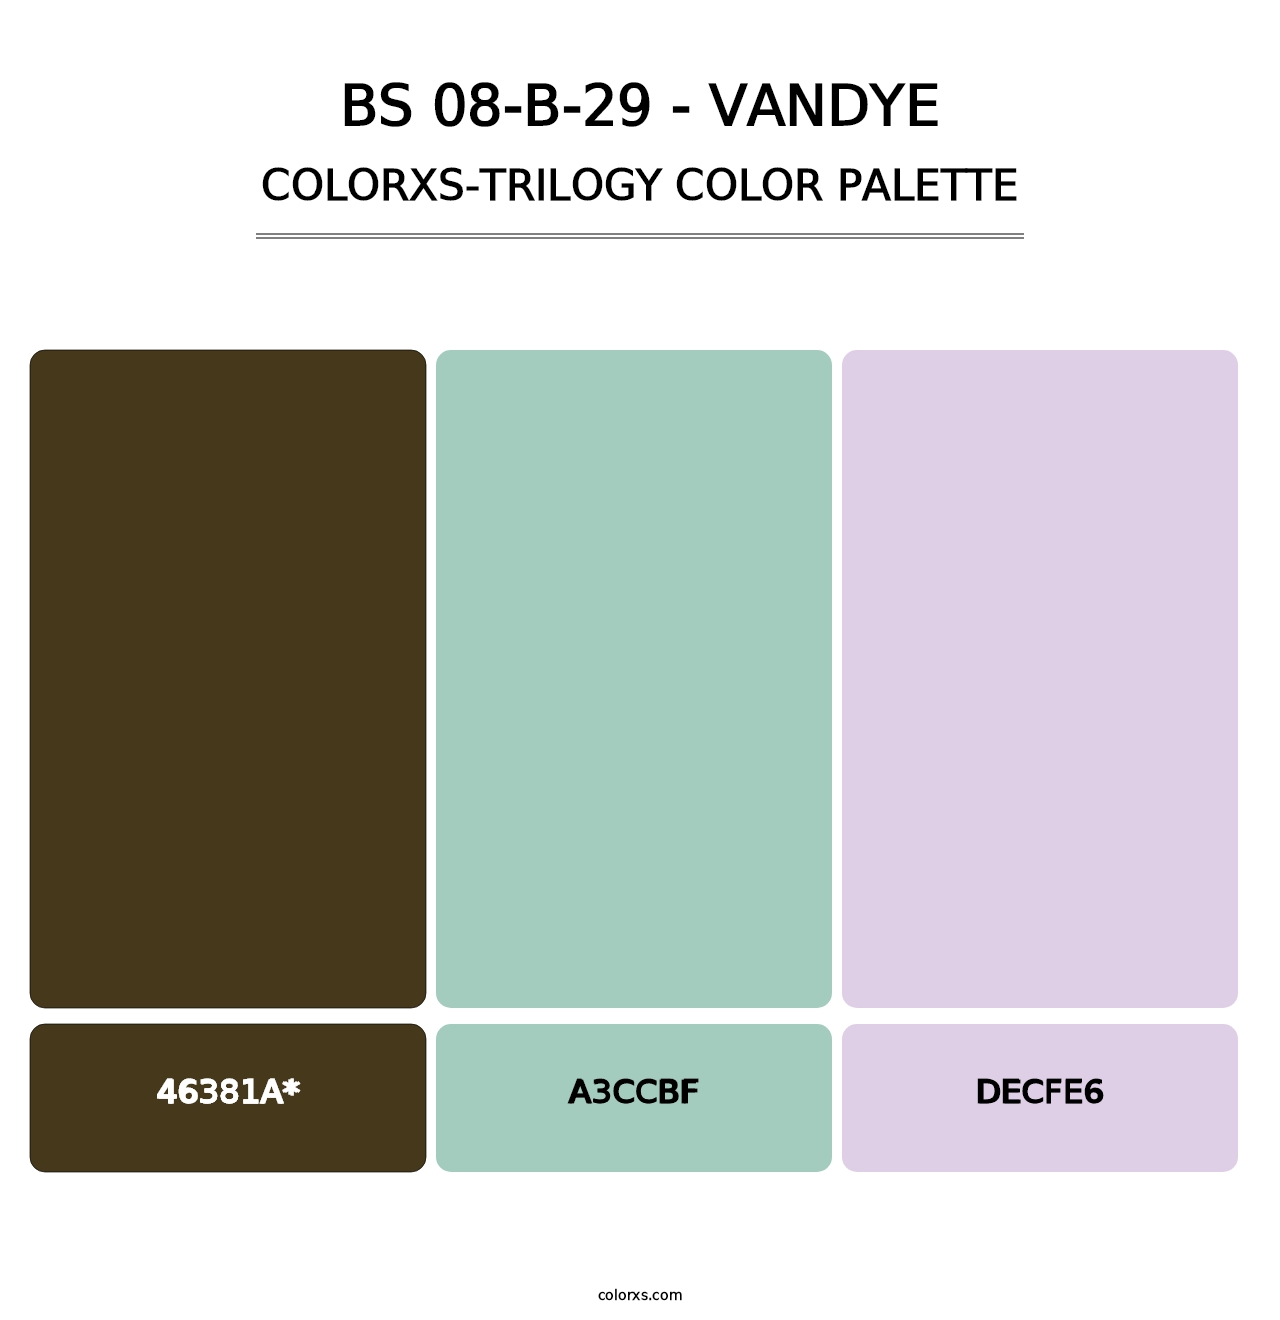 BS 08-B-29 - Vandye - Colorxs Trilogy Palette